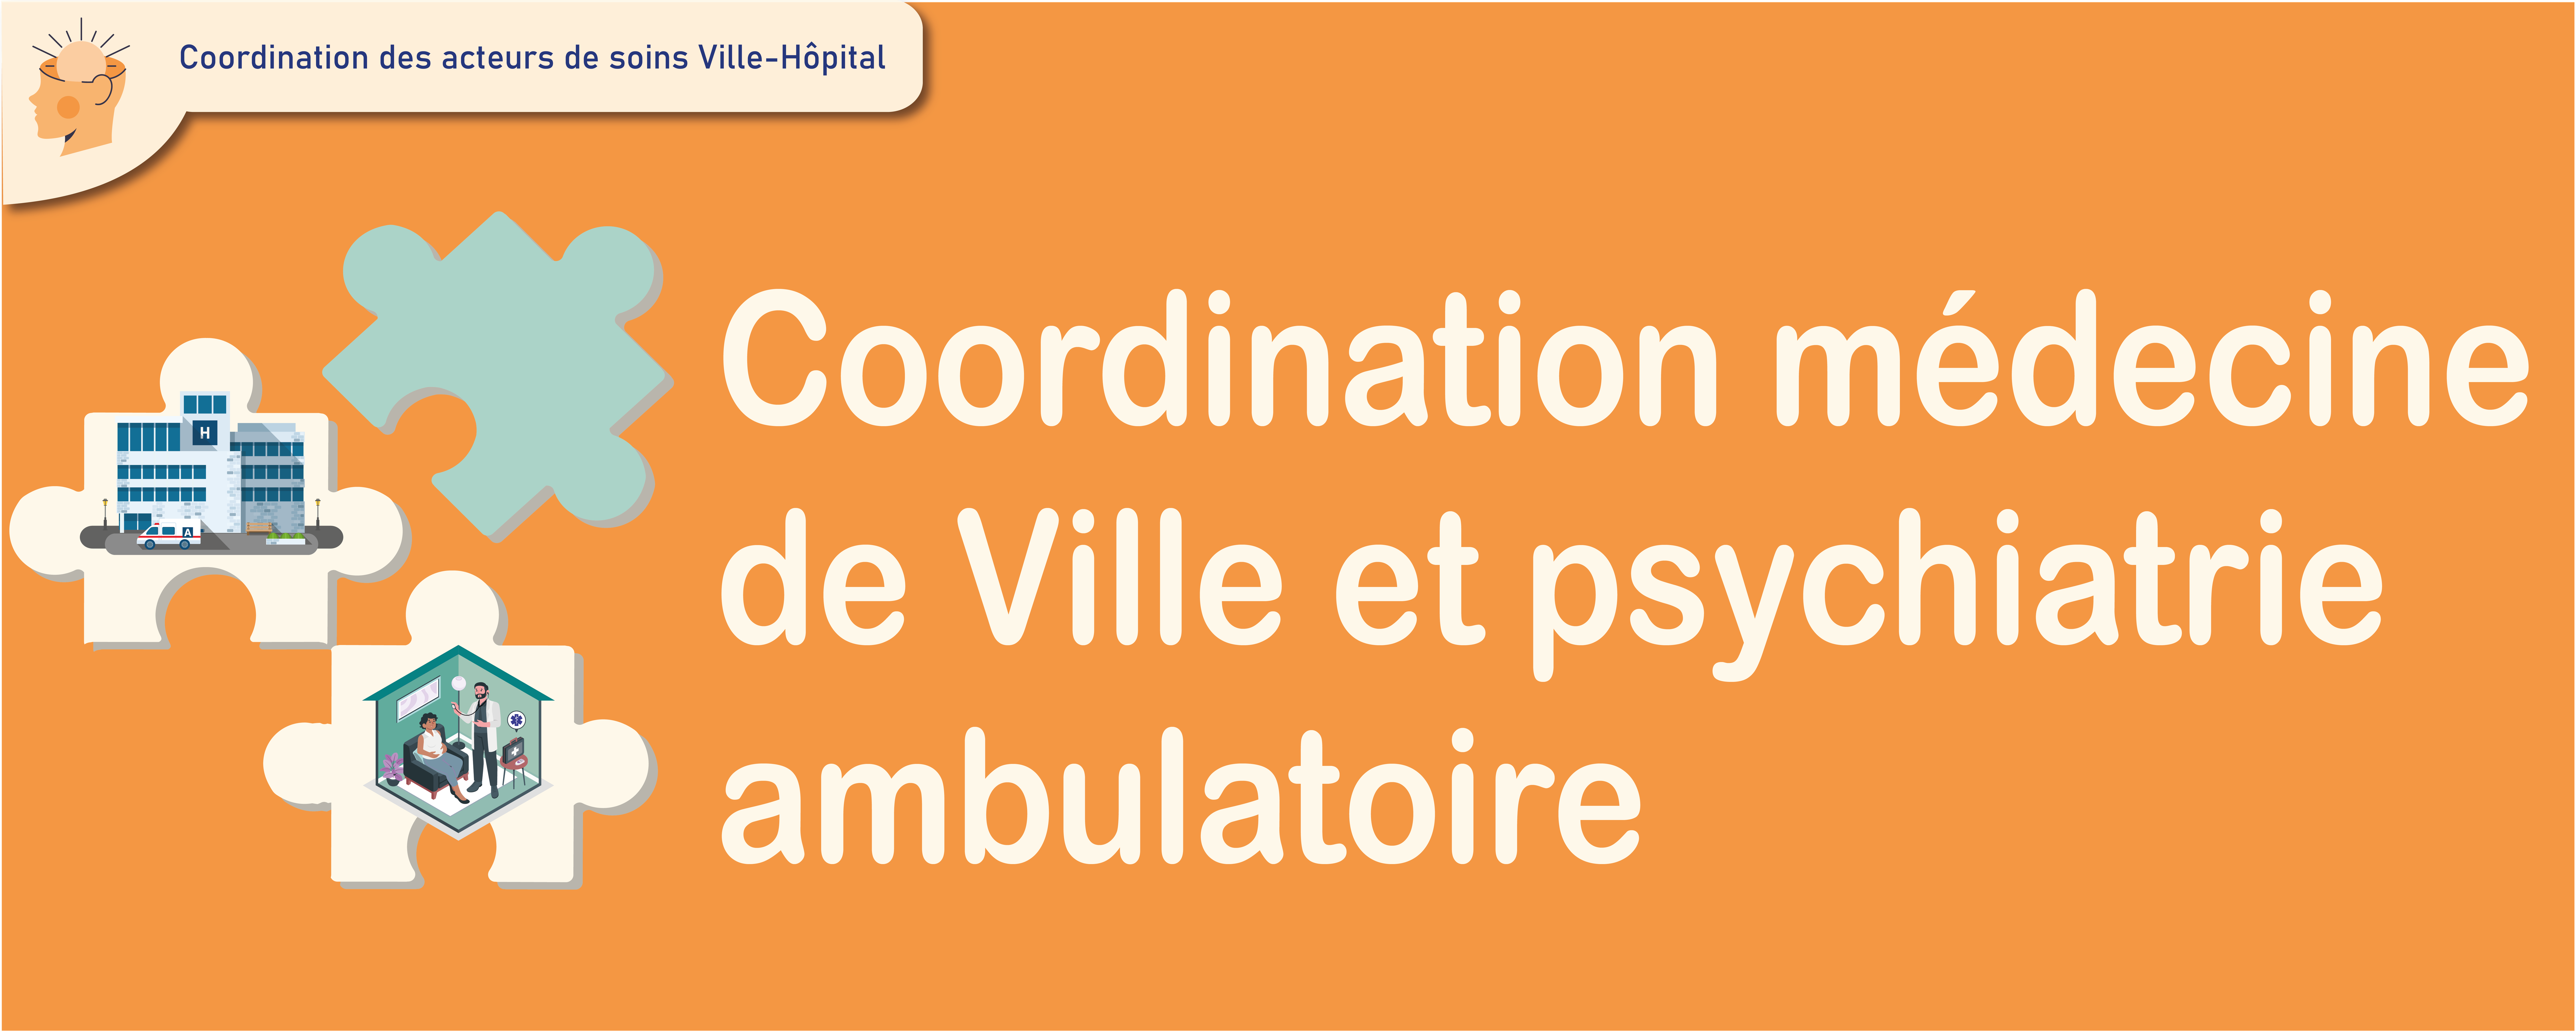 2276x1143_Coordination médecine de ville et psychiatrie ambulatoire _Plan de travail 1.png